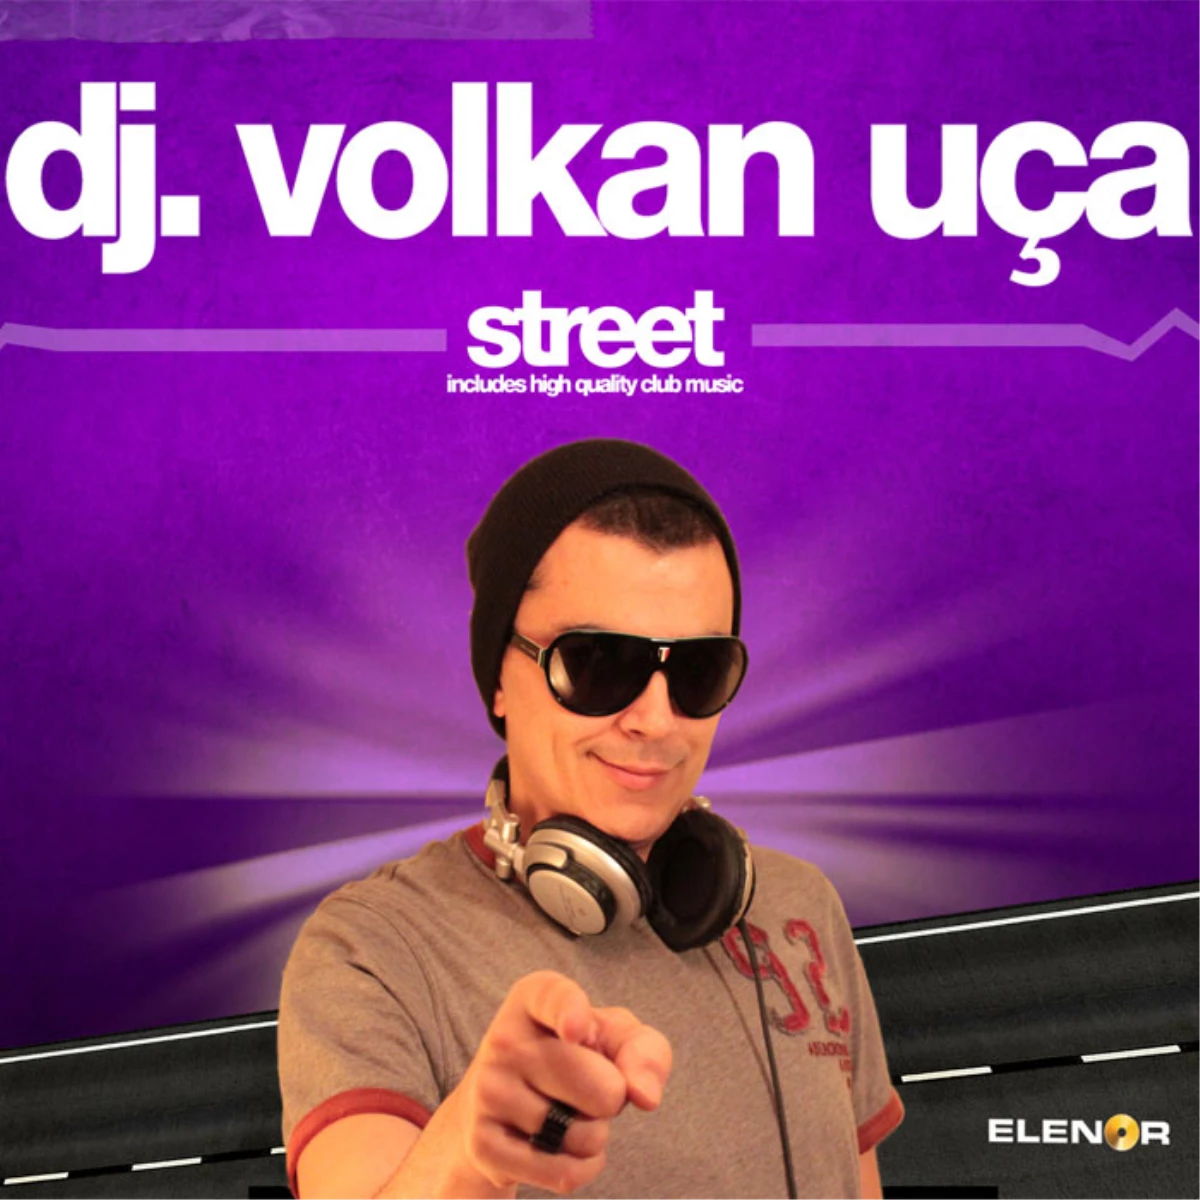 Dj. Volkan Uça Street Albümü ile Başarıdan Başarıya Koşuyor